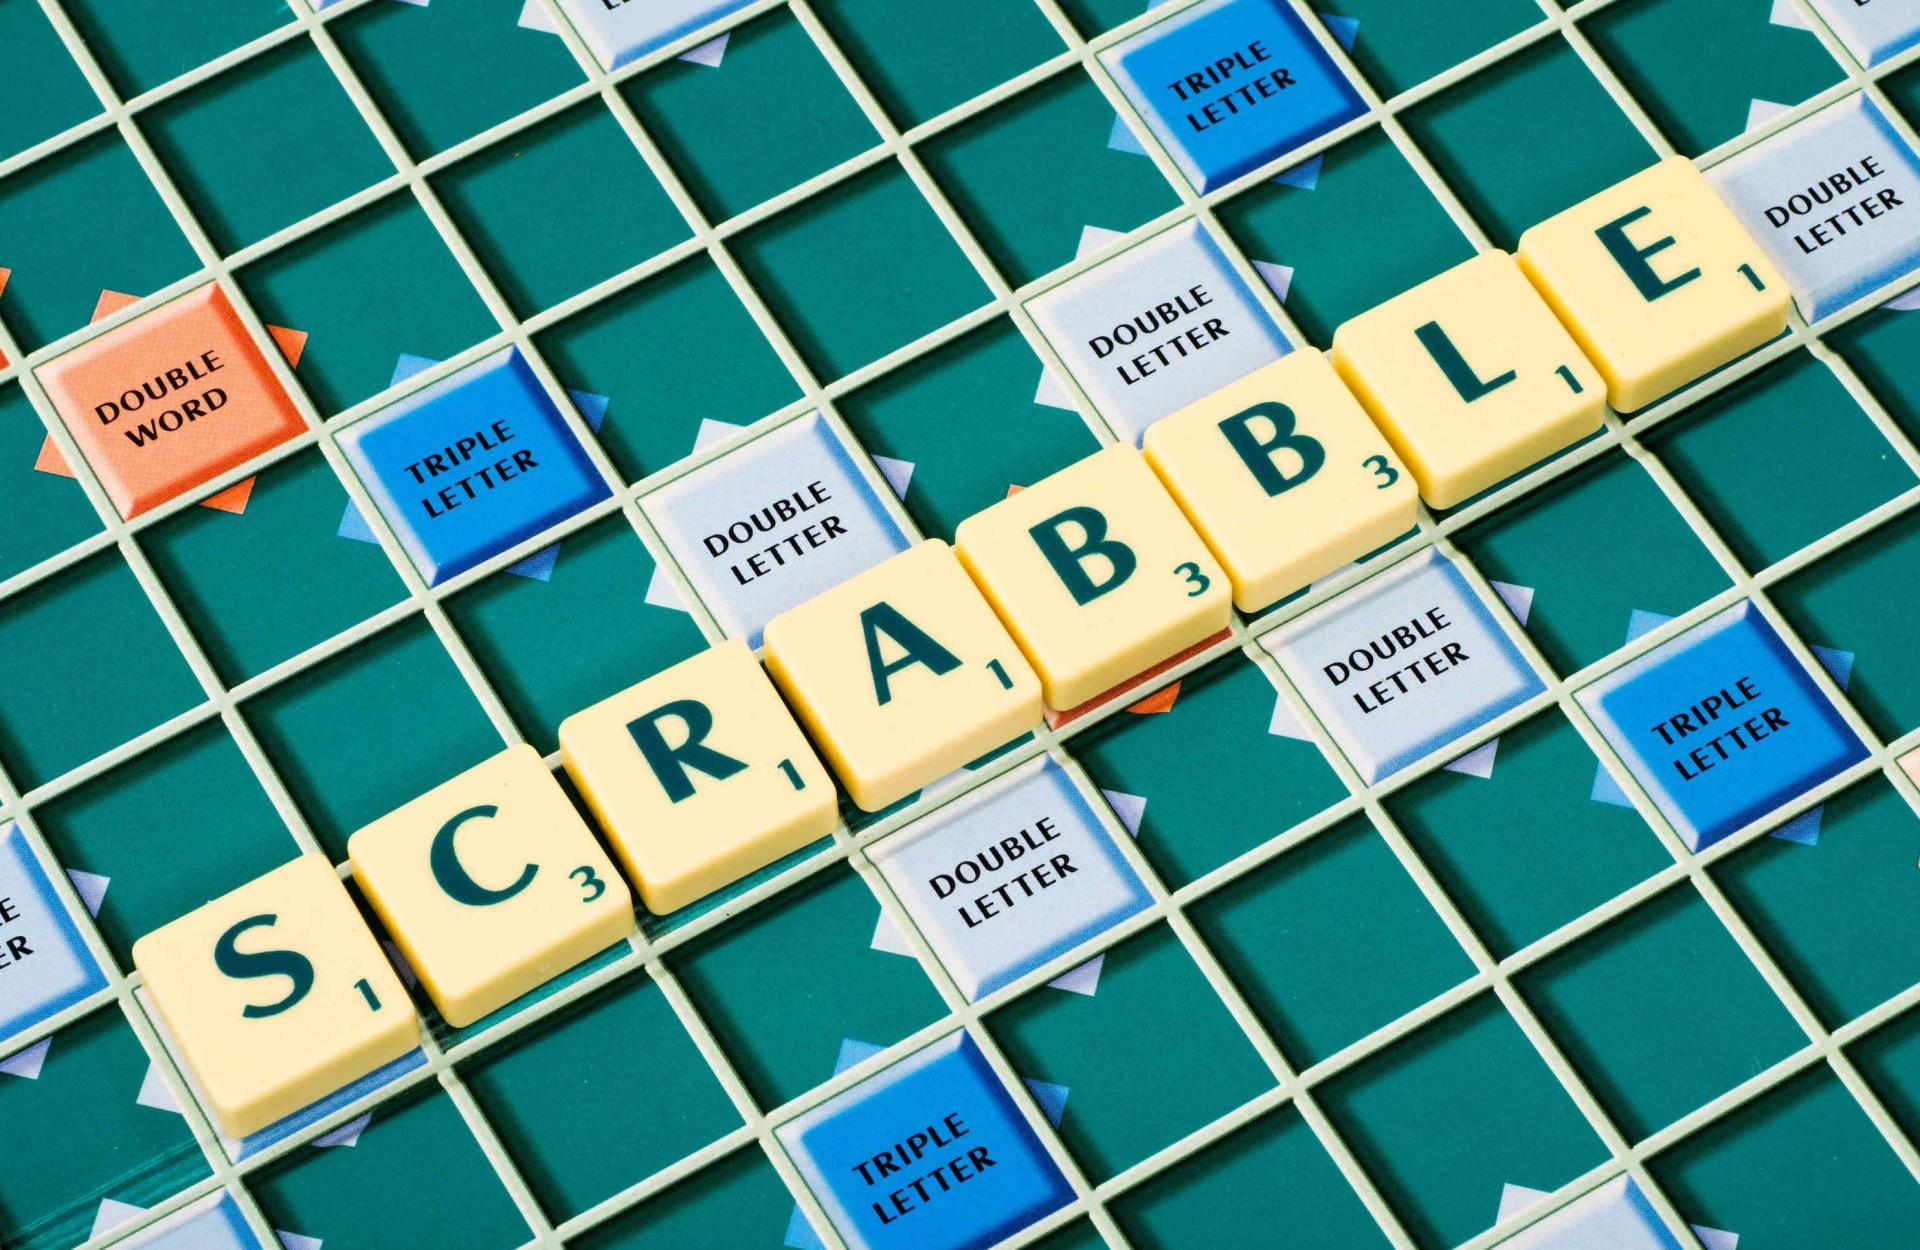 Scrabble classic